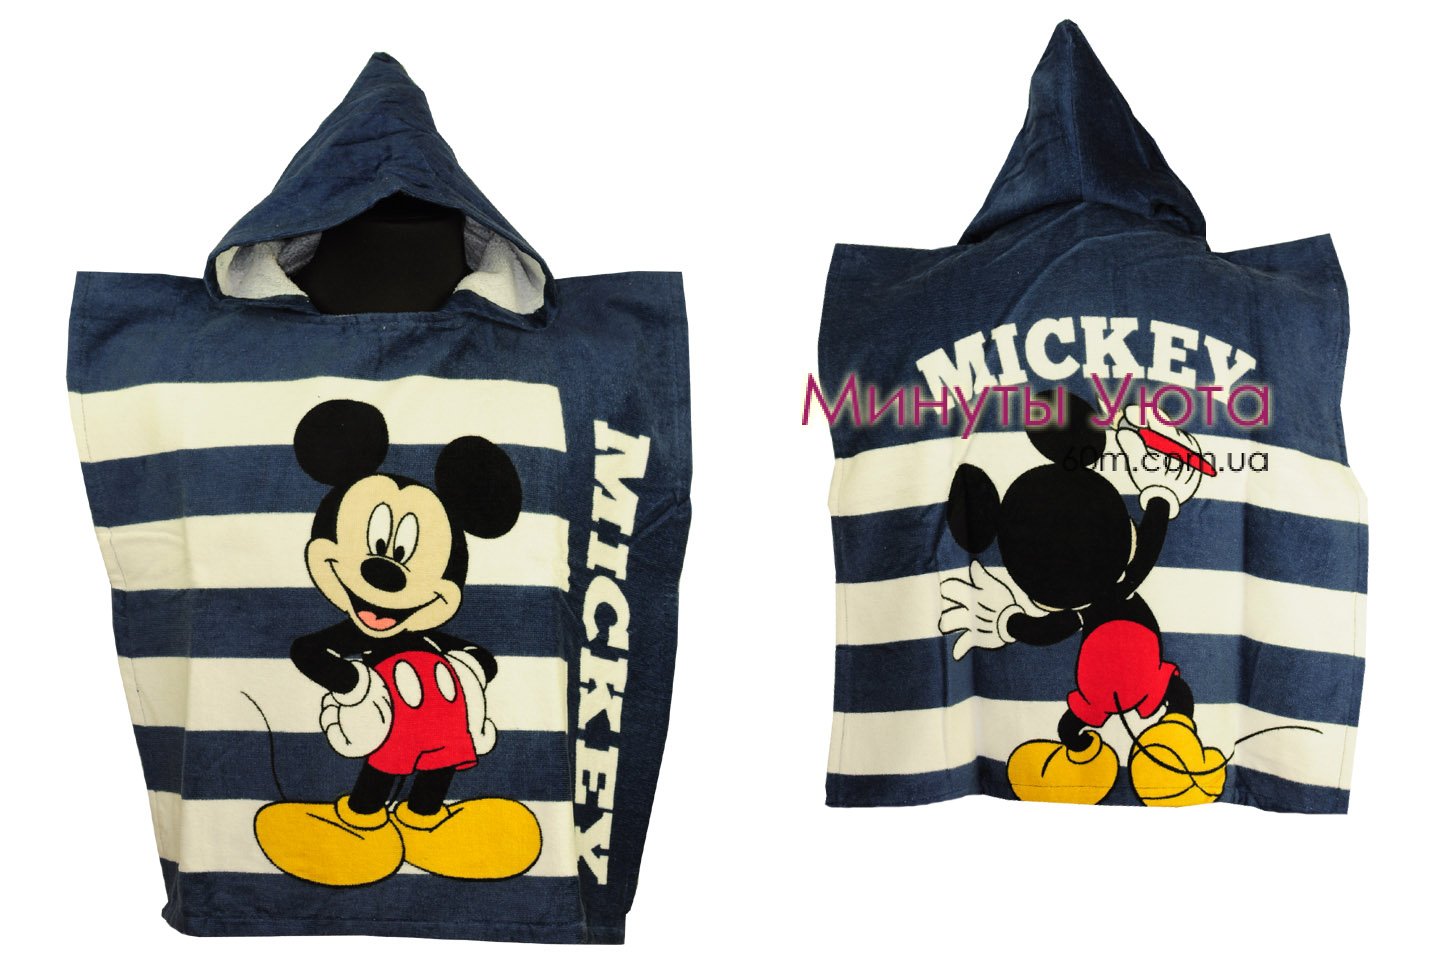 Пляжное полотенце - пончо Mickey Mouse Turkey